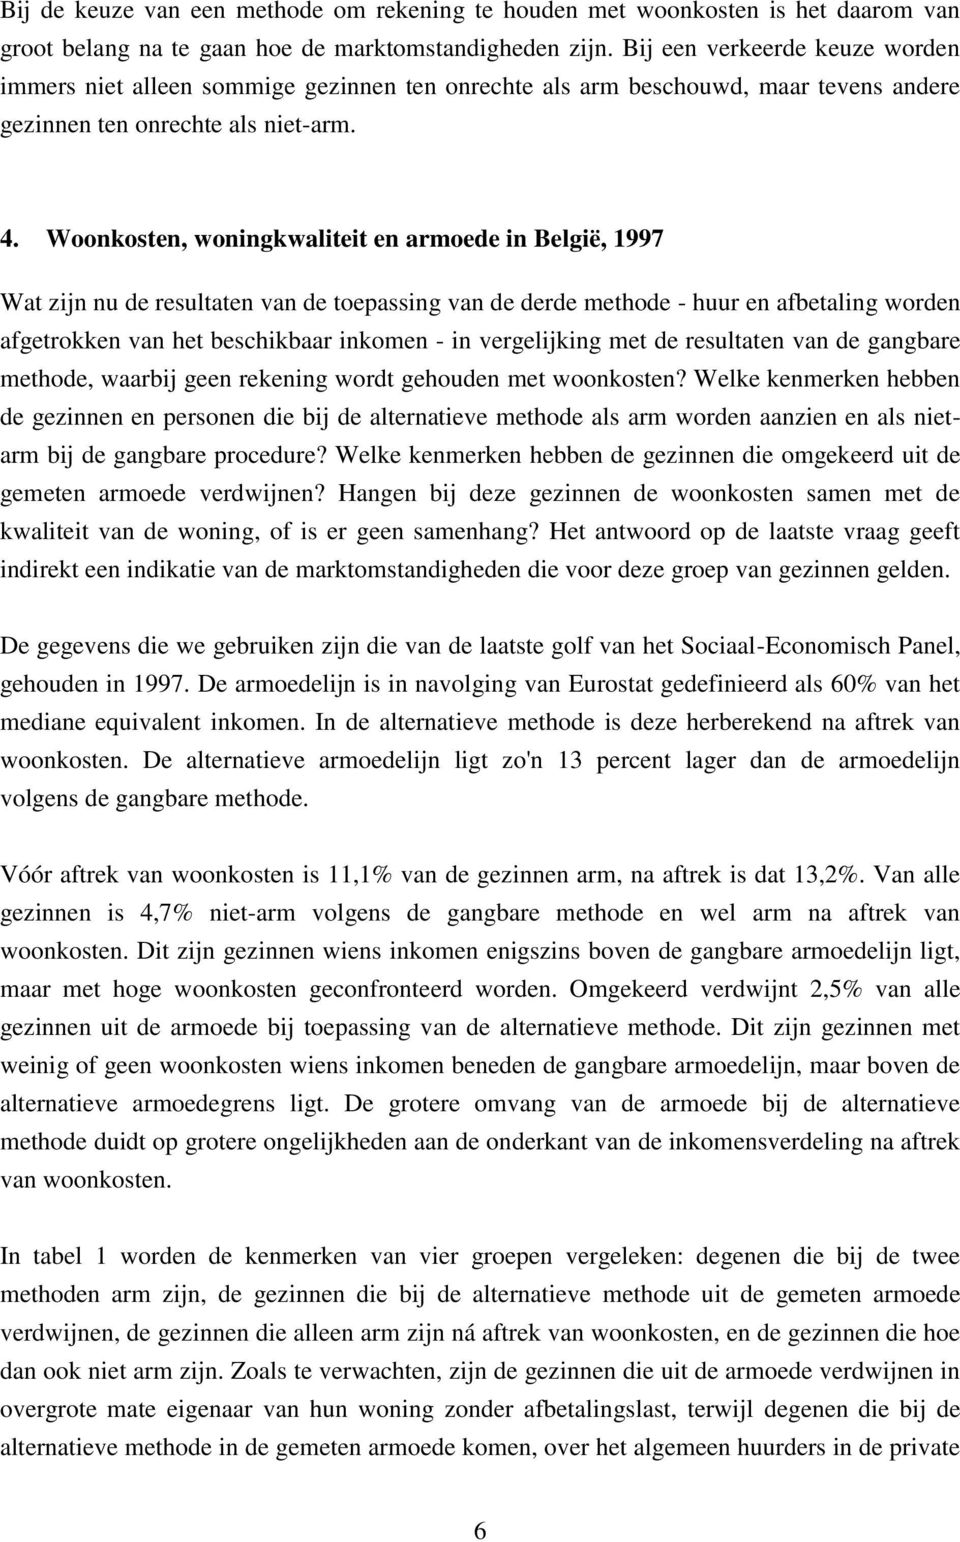 Woonkosten, woningkwaliteit en armoede in België, 1997 Wat zijn nu de resultaten van de toepassing van de derde methode - huur en afbetaling worden afgetrokken van het beschikbaar inkomen - in